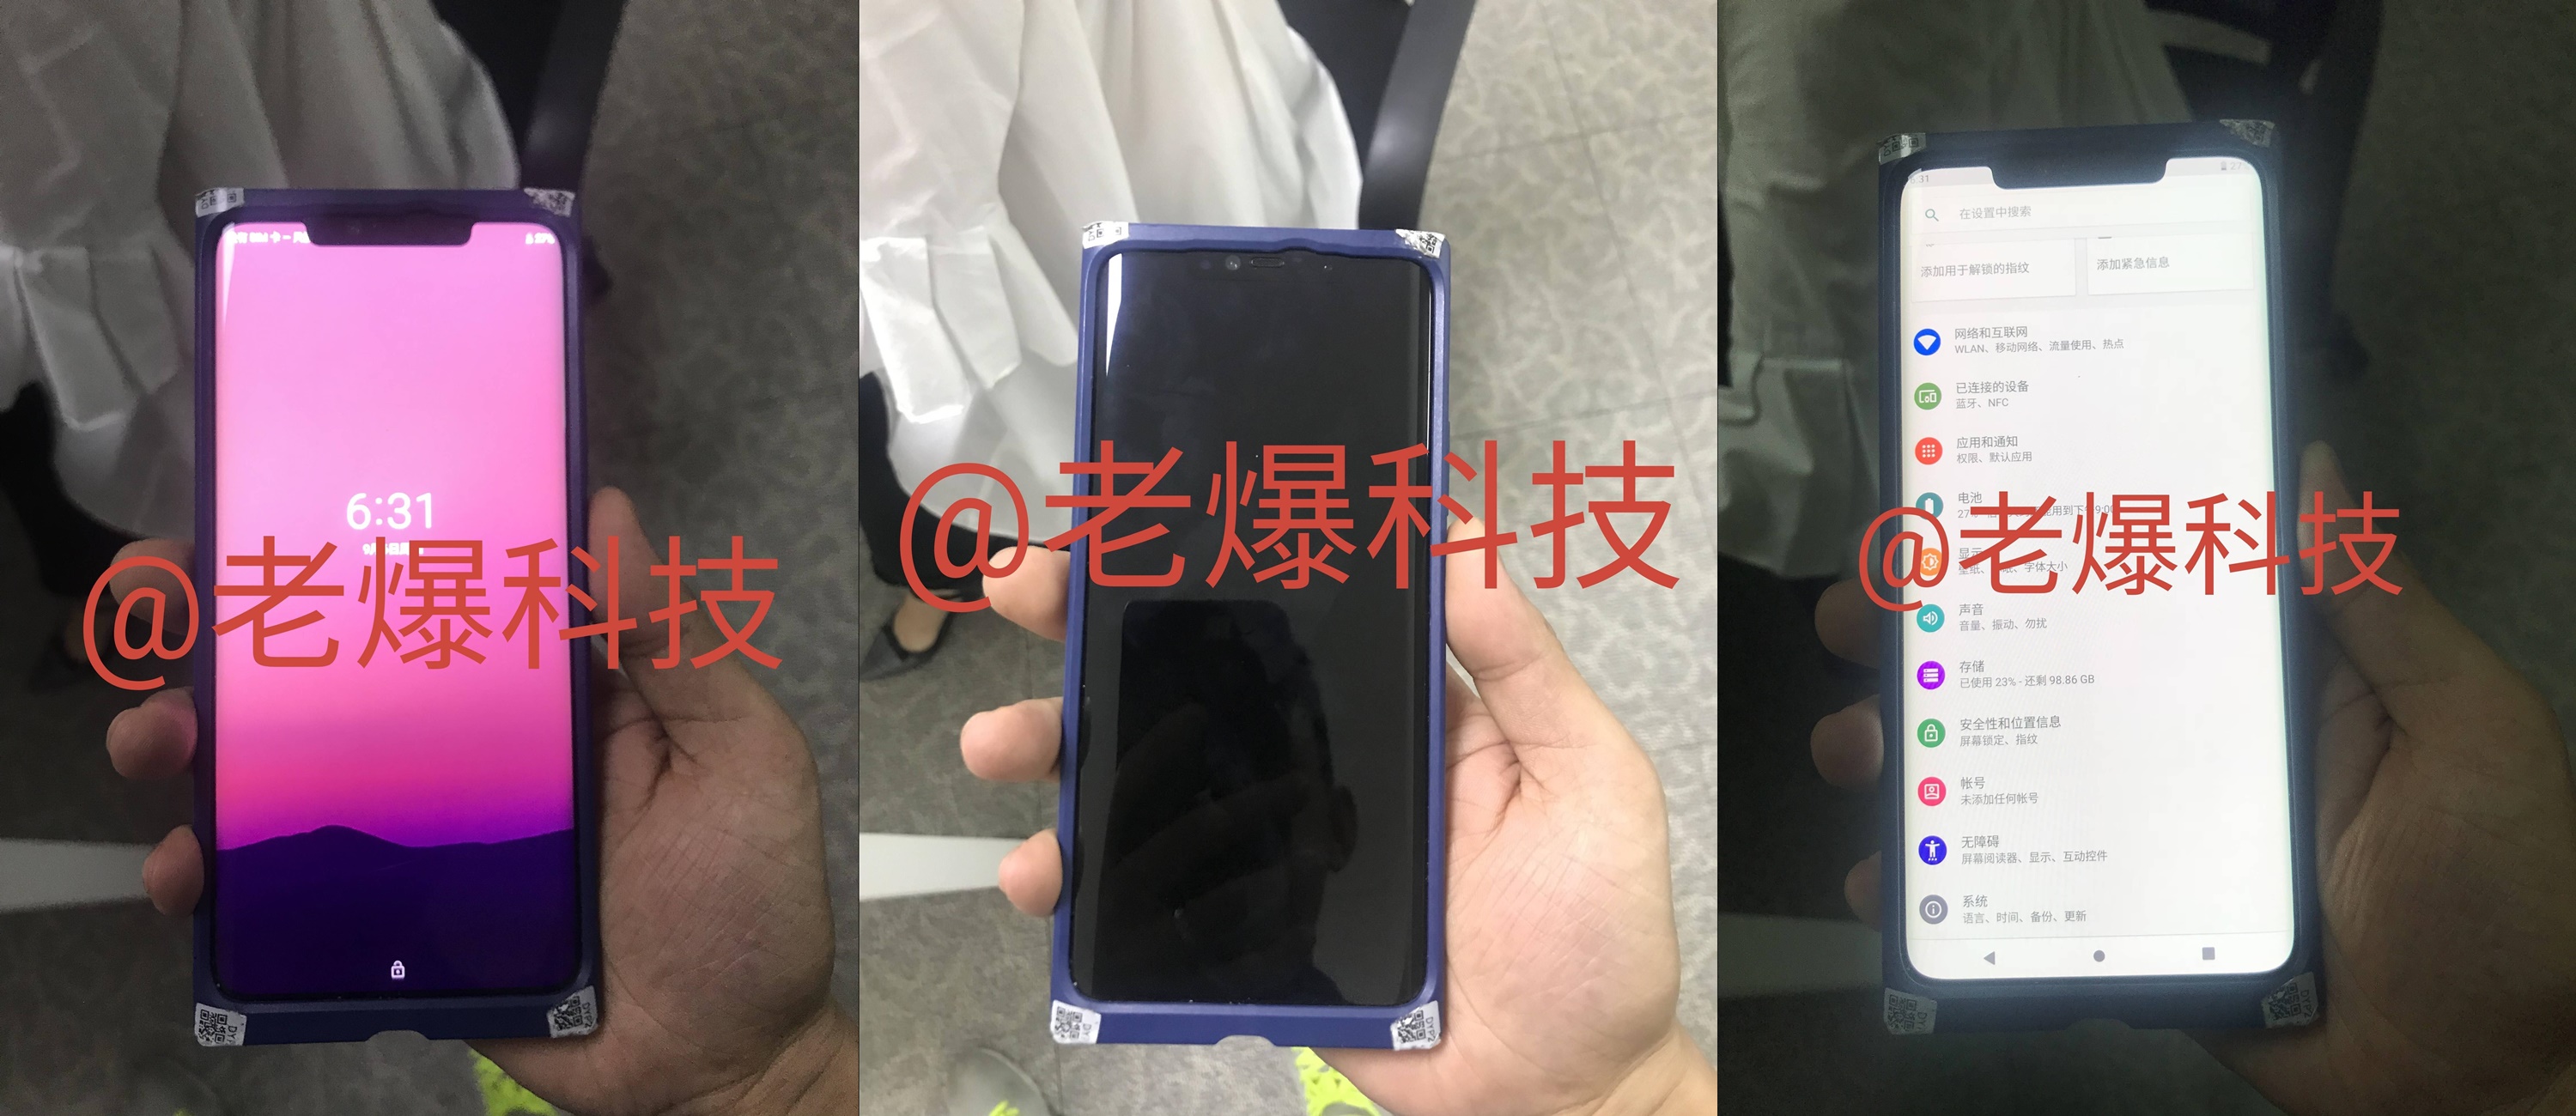 Huawei MATE 20 Pro Bilder ZEIGEN iPhone X KLON 1